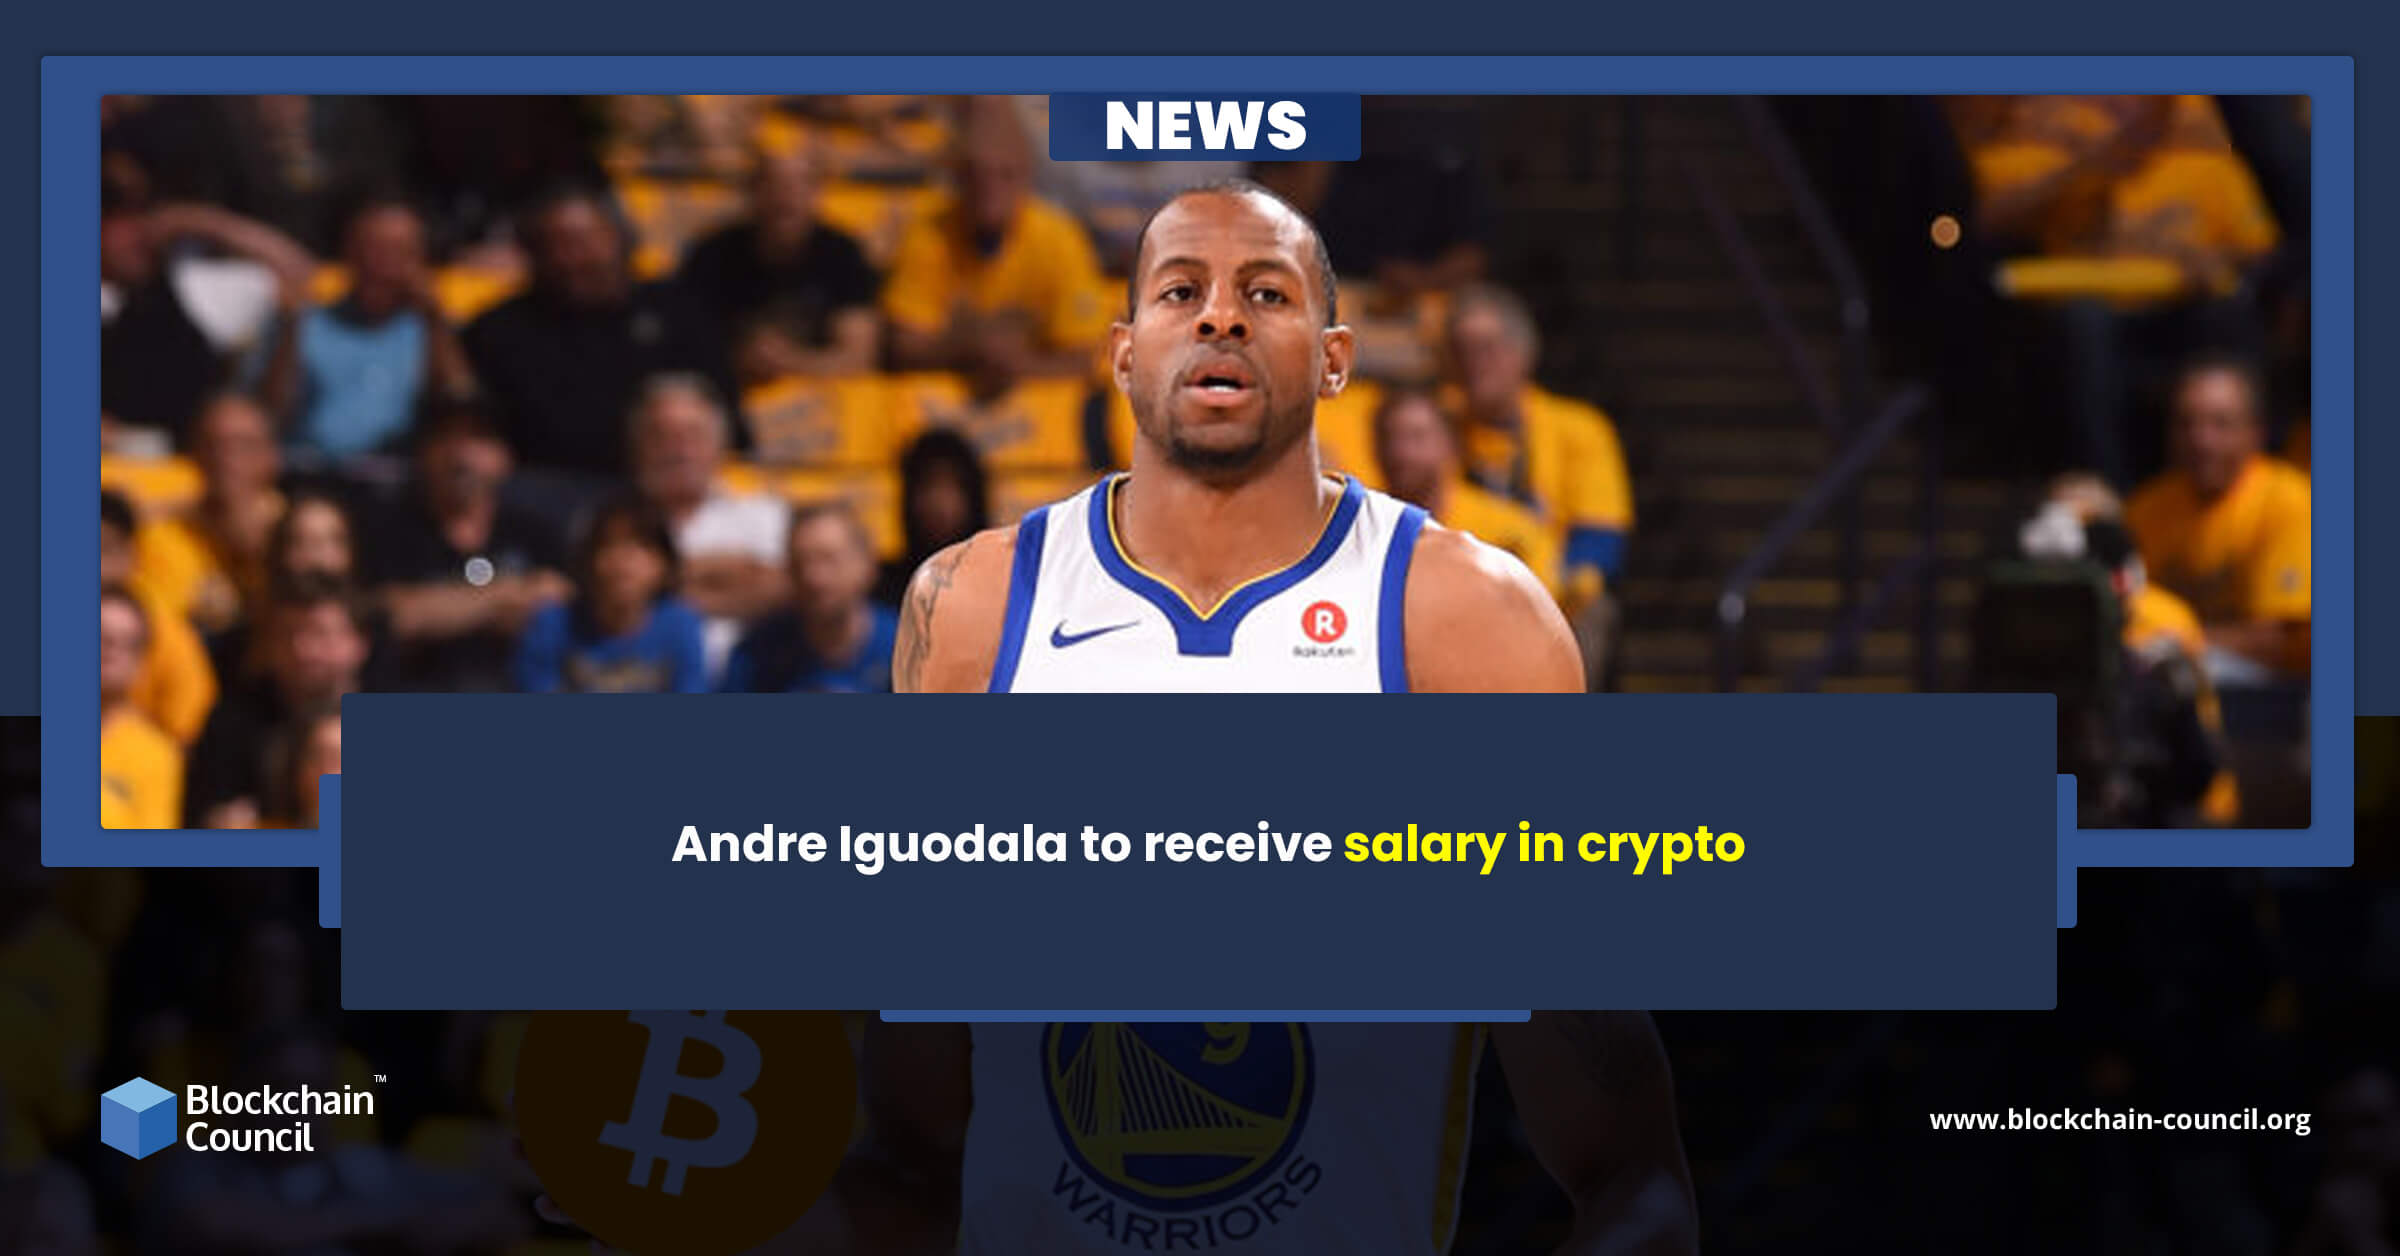 Andre Iguodala to receive salary in crypto